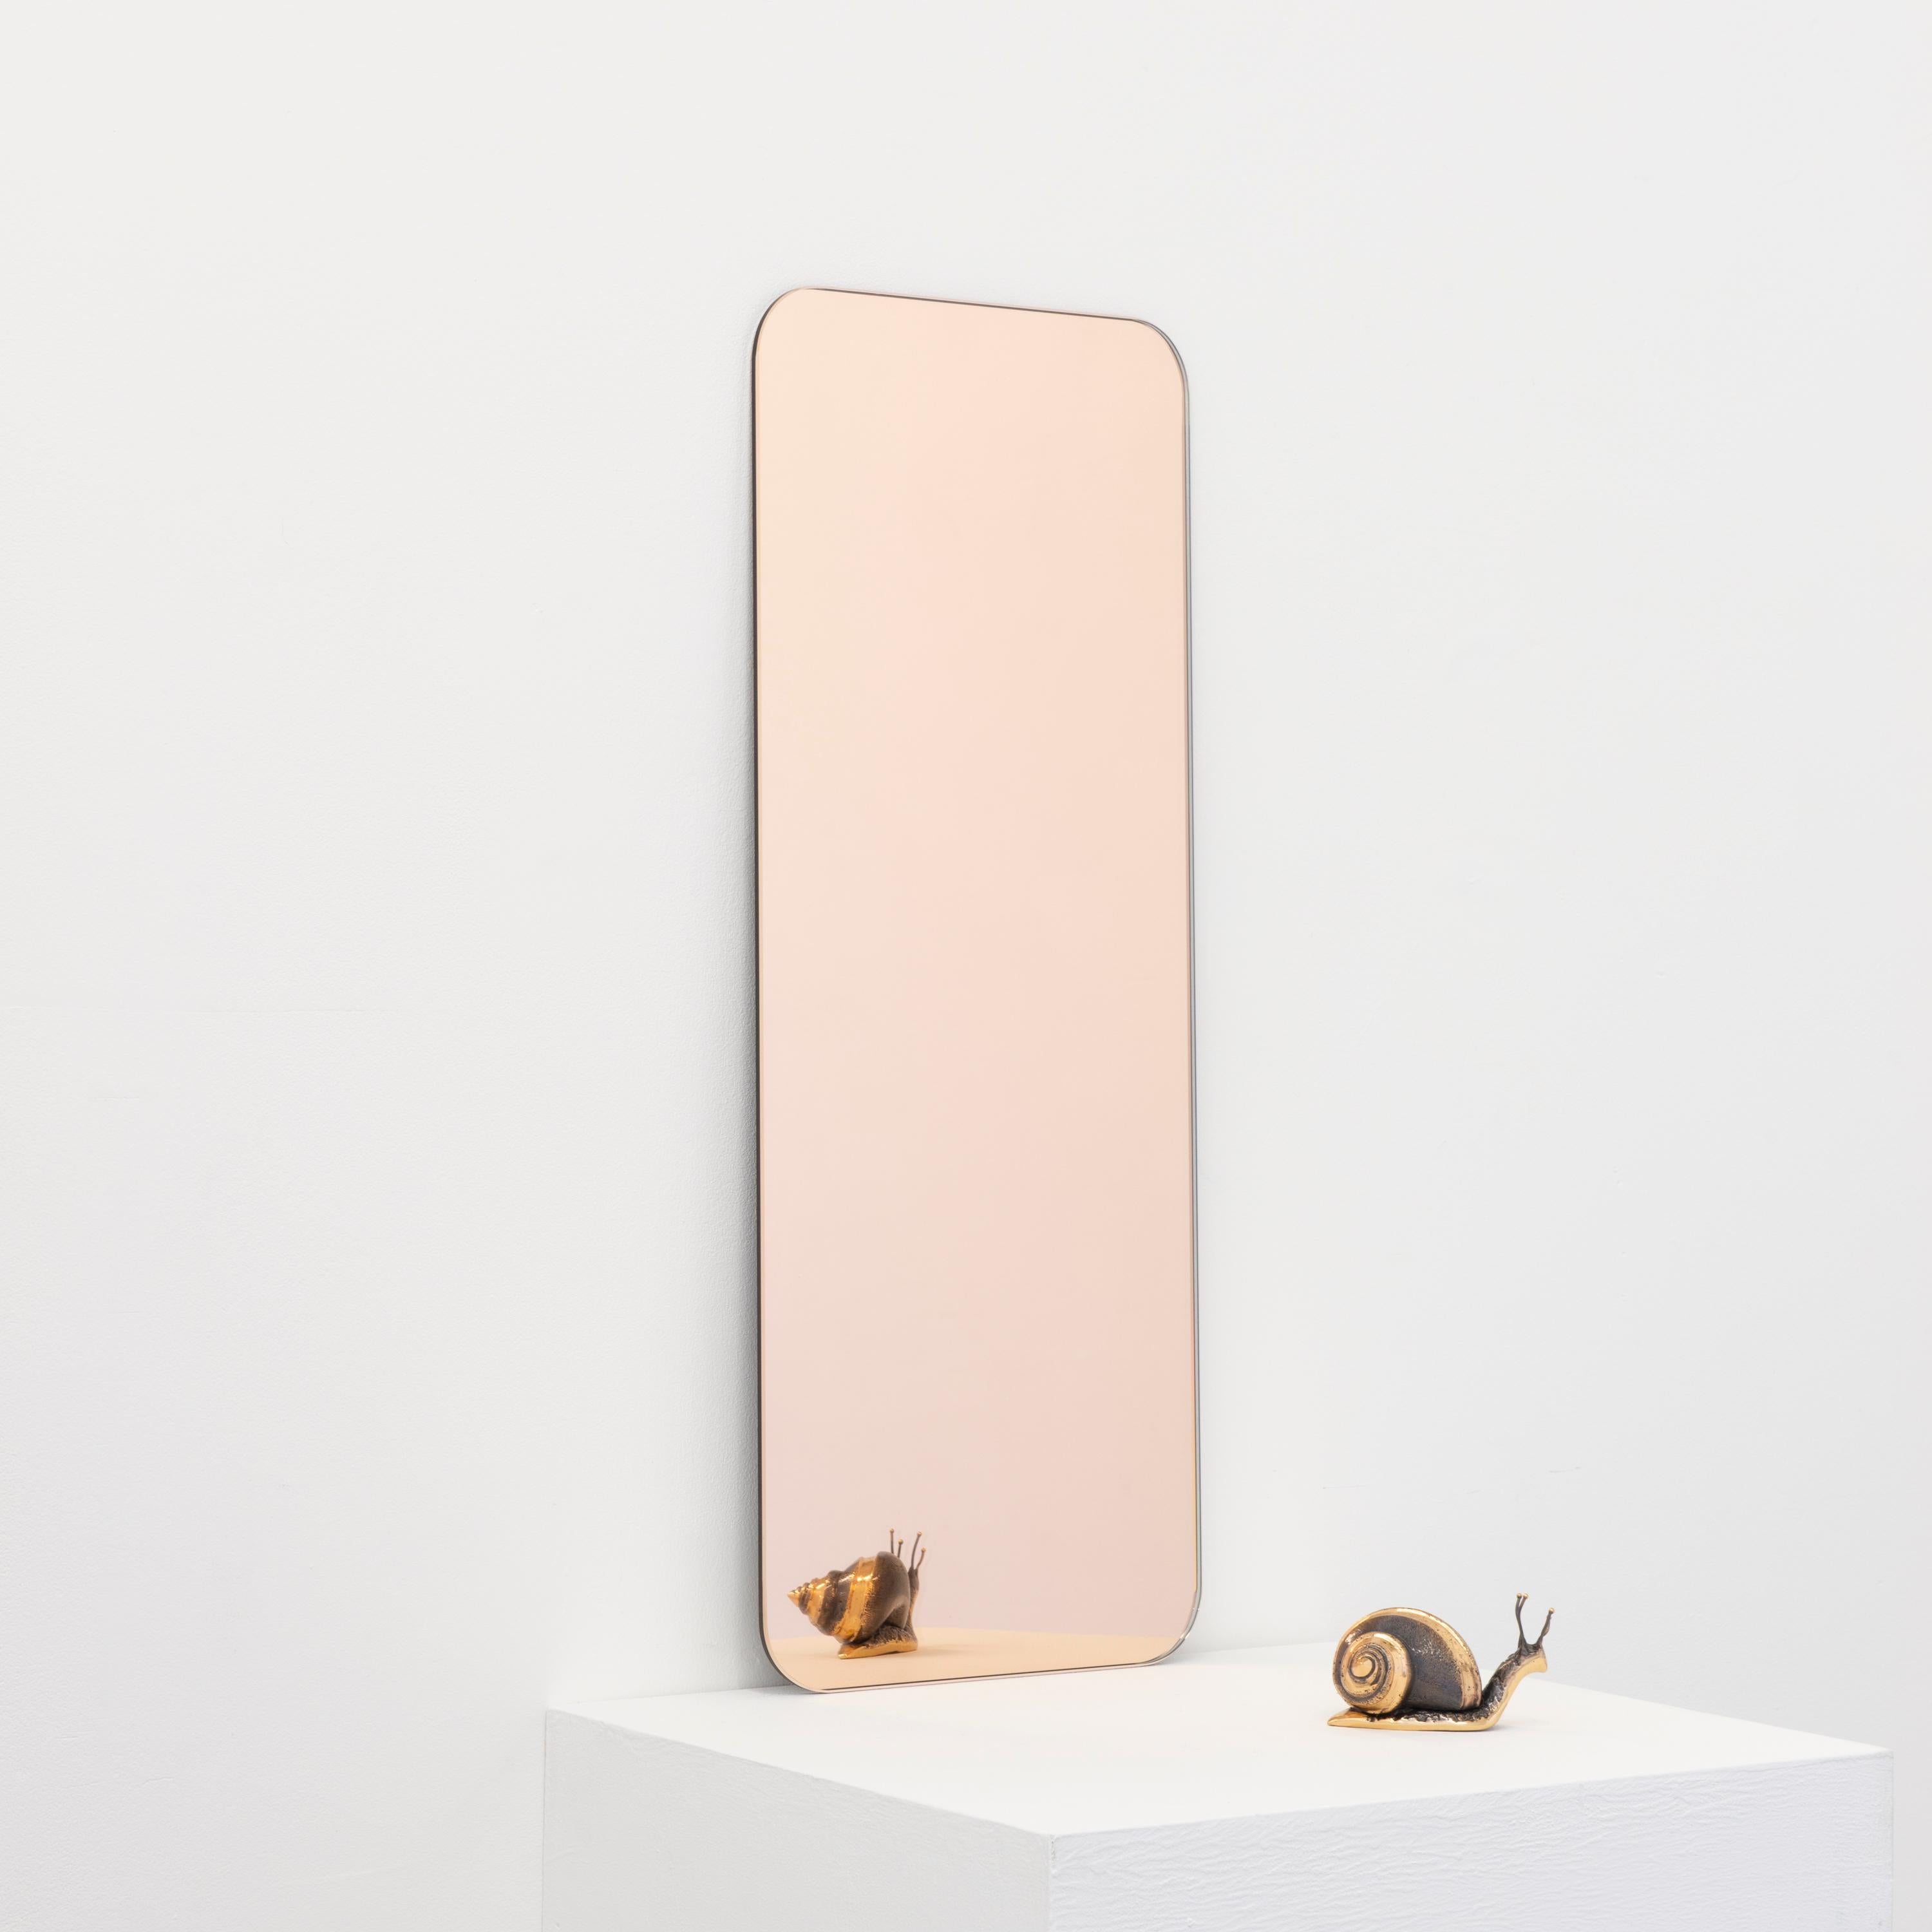 Miroir minimaliste de forme rectangulaire sans cadre, teinté en or rose, avec un effet flottant. Un design de qualité qui garantit que le miroir est parfaitement parallèle au mur. Conçu et fabriqué à Londres, au Royaume-Uni.

Equipé de plaques